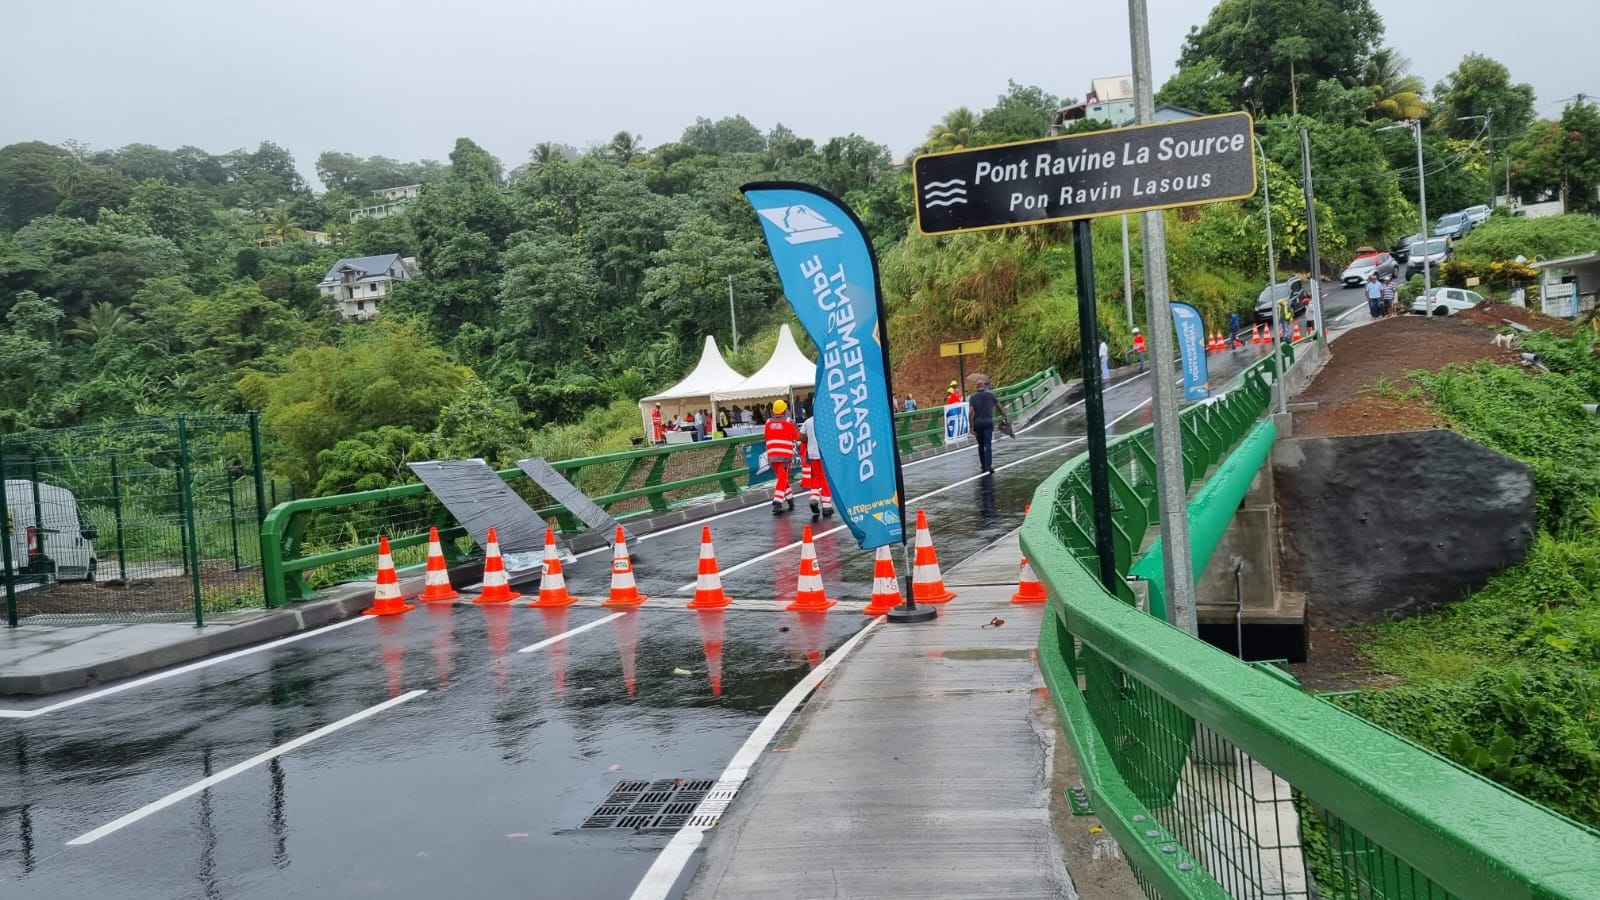     Après un an de travaux, le pont Ravine La Source inauguré à Trois-Rivières

